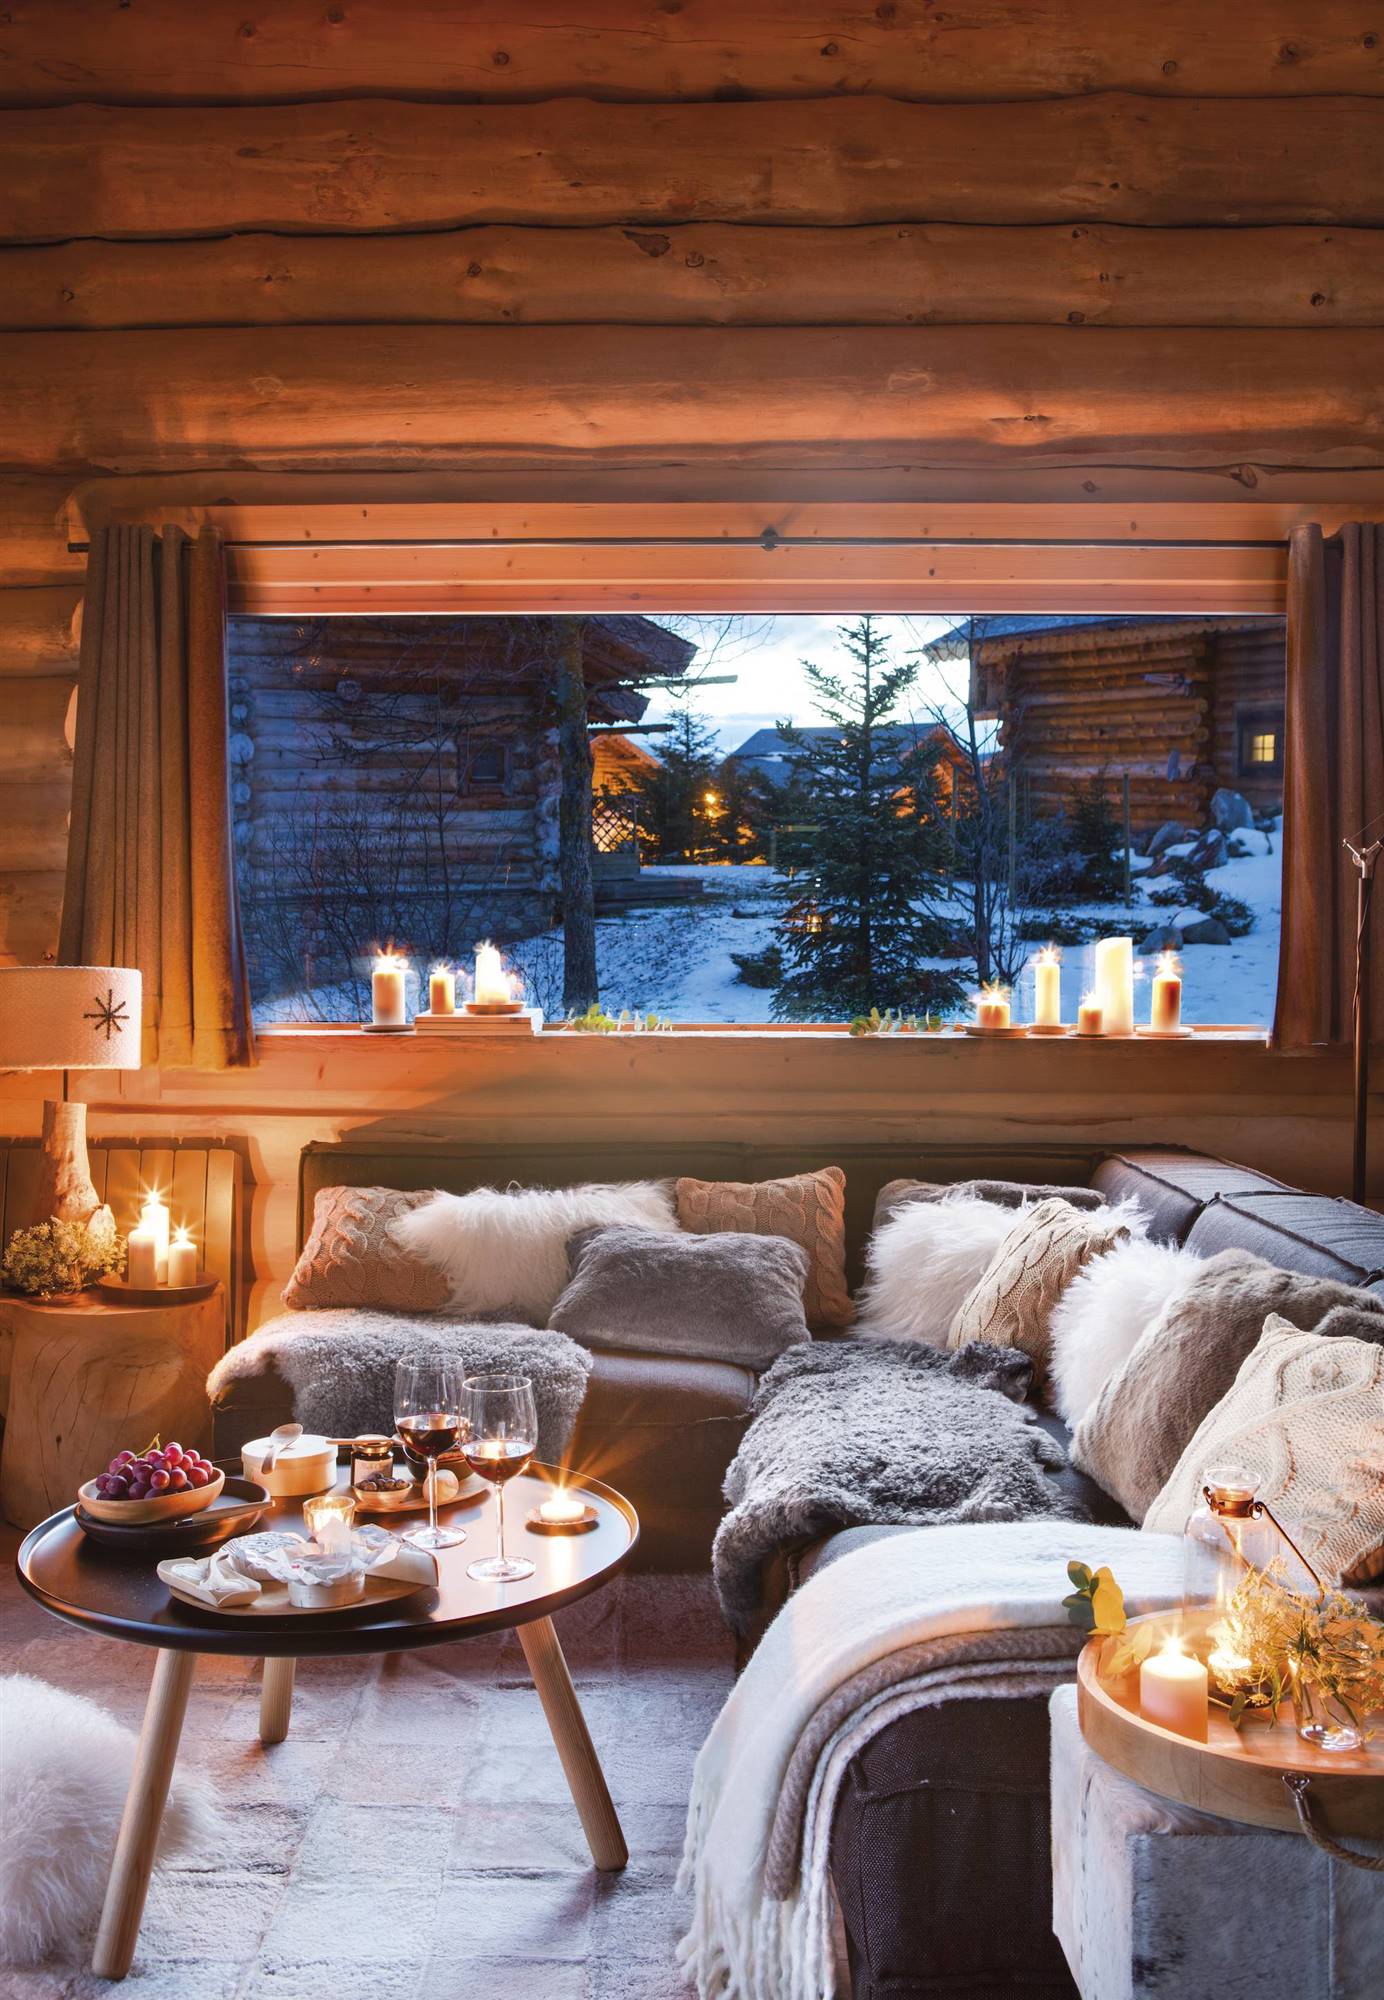 Salón rústico con paredes de madera y ventana con paisaje nevado.